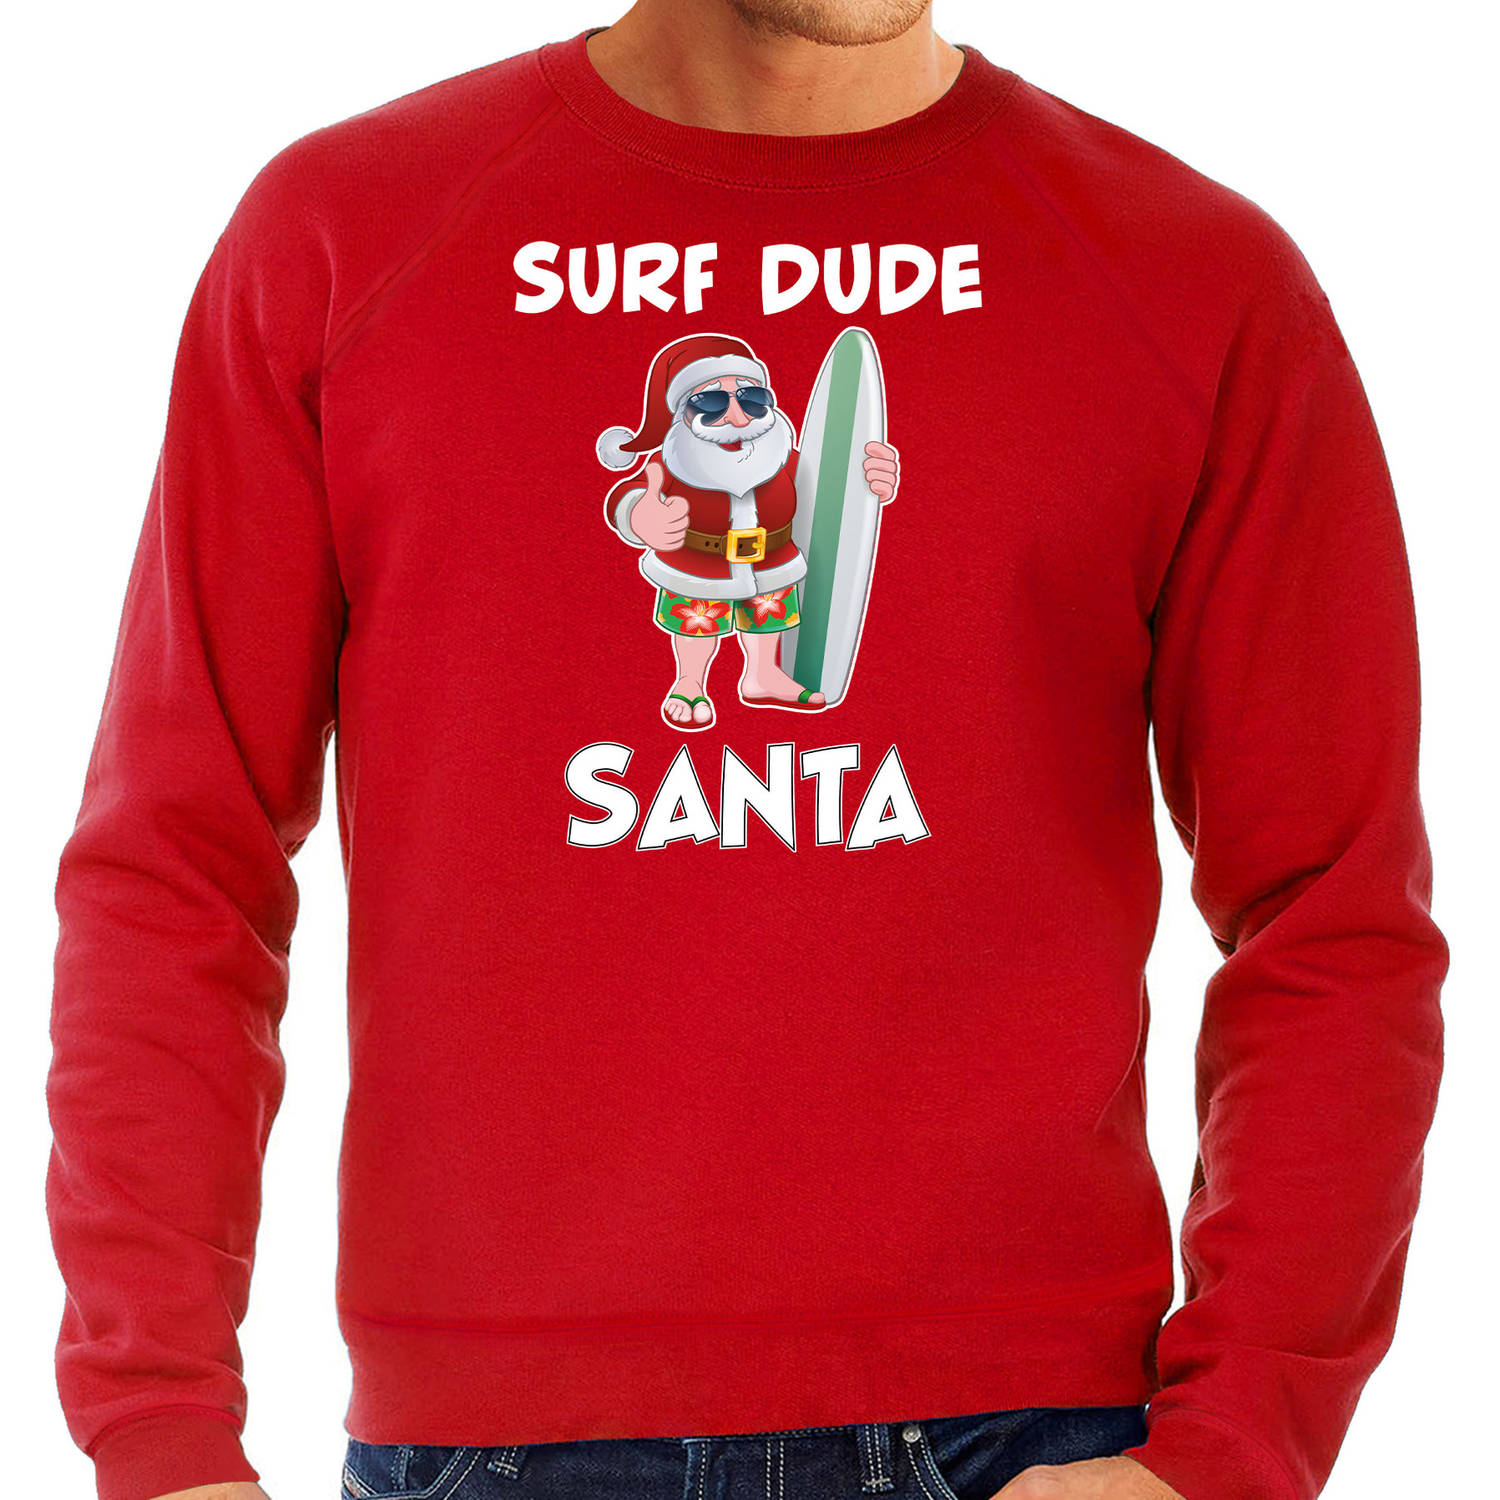 Rode Kersttrui / Kerstkleding surf dude Santa voor heren S - kerst truien